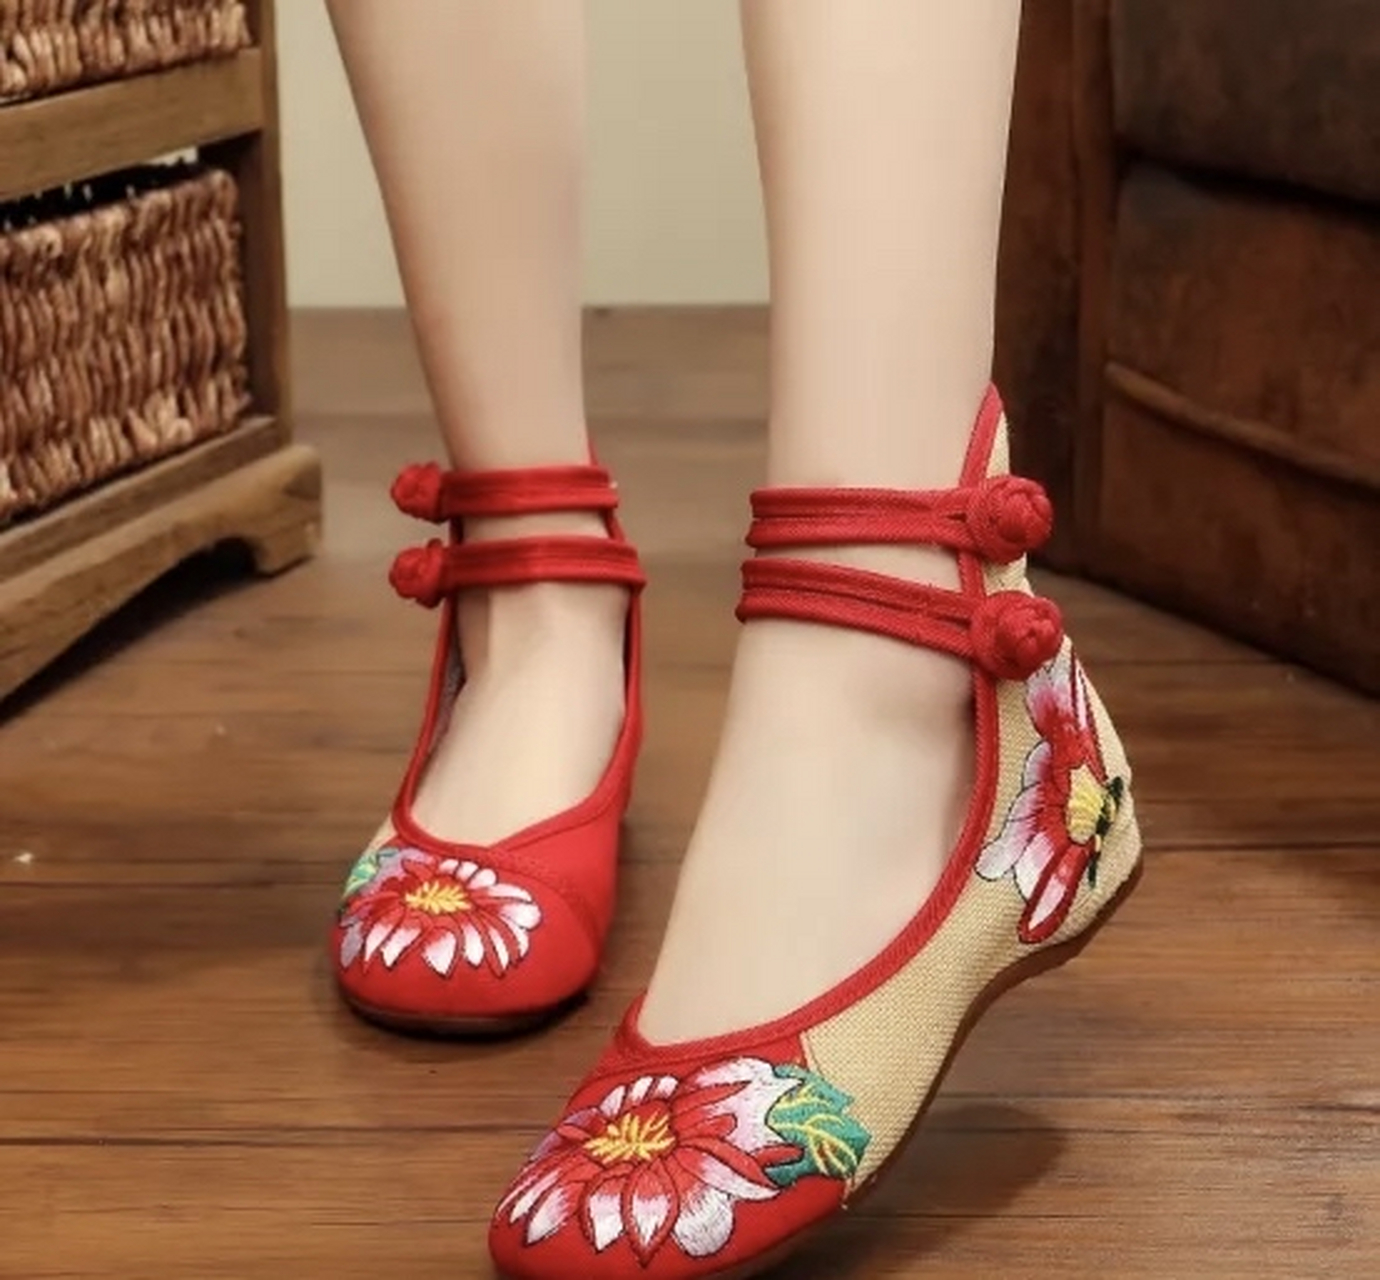 宋朝末年的金钩绣鞋——一种独特的精美鞋履 02 前言:在中国历史上